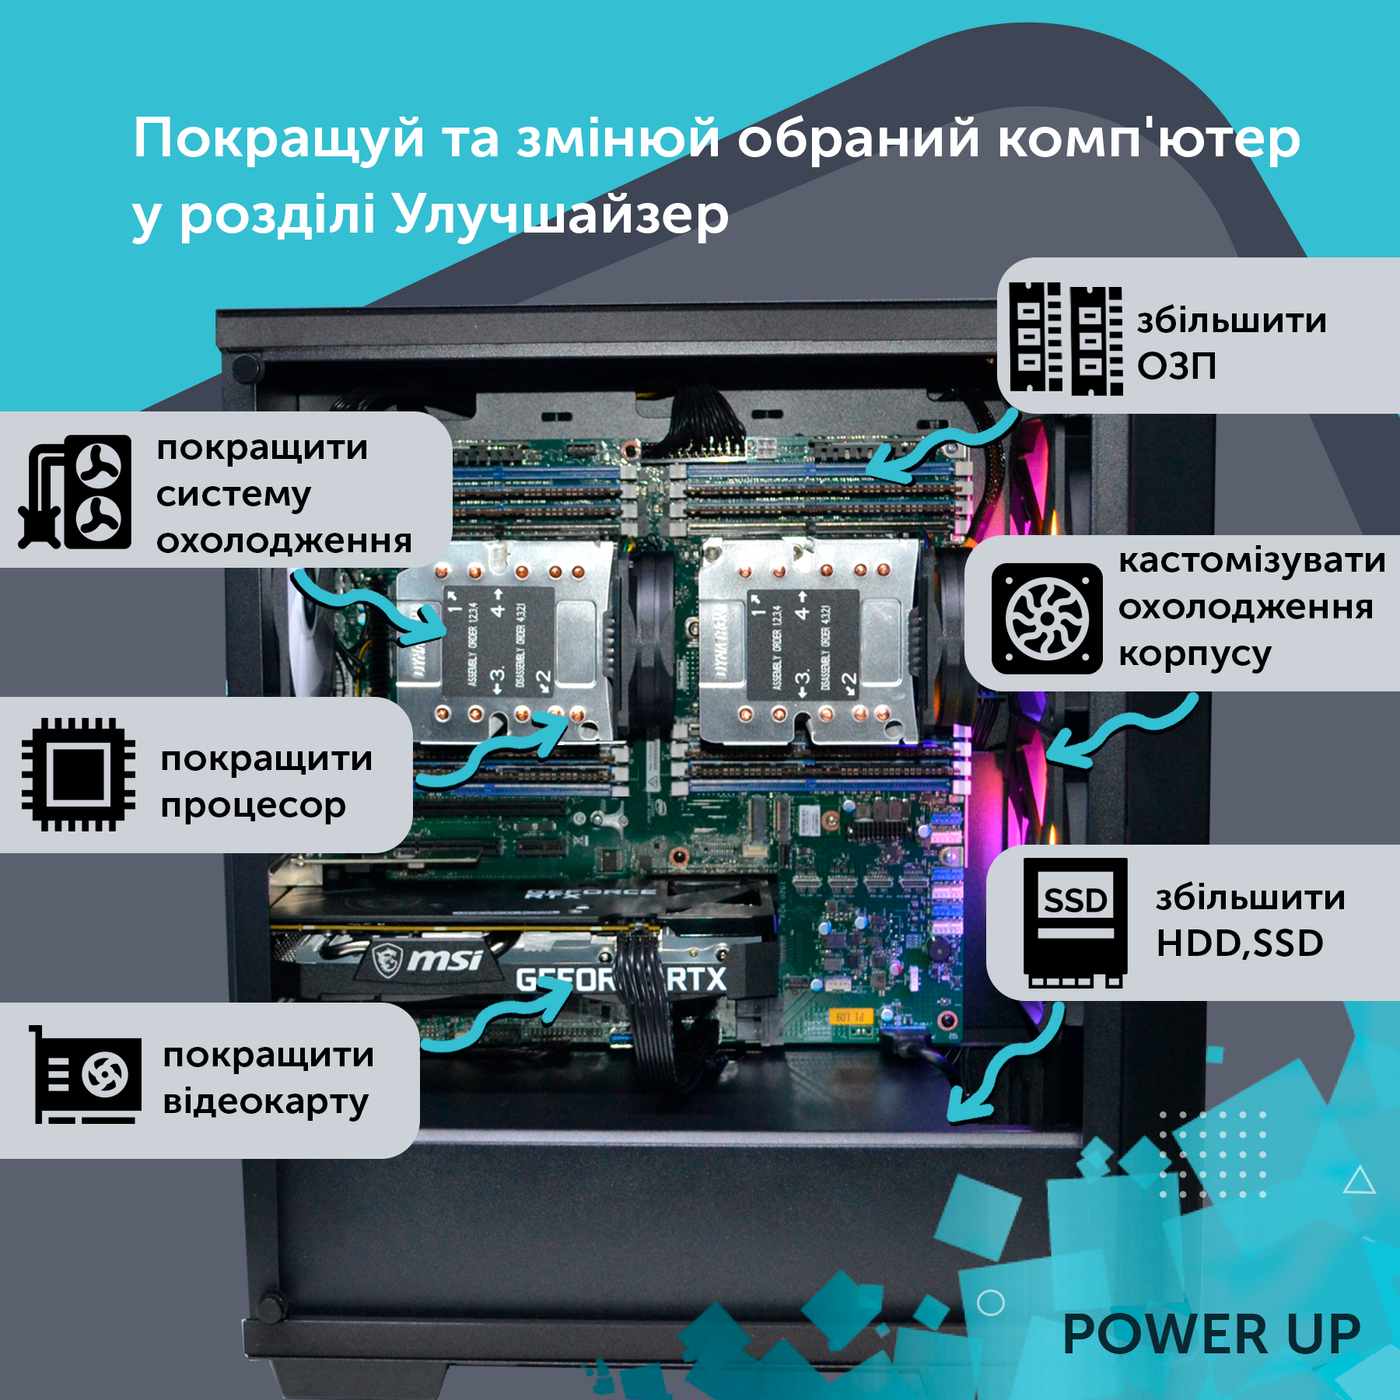 Двухпроцессорная рабочая станция PowerUp #238 Xeon E5 2699 v4 x2/64 GB/HDD 1 TB/SSD 512GB/NVIDIA Quadro RTX A4000 16GB